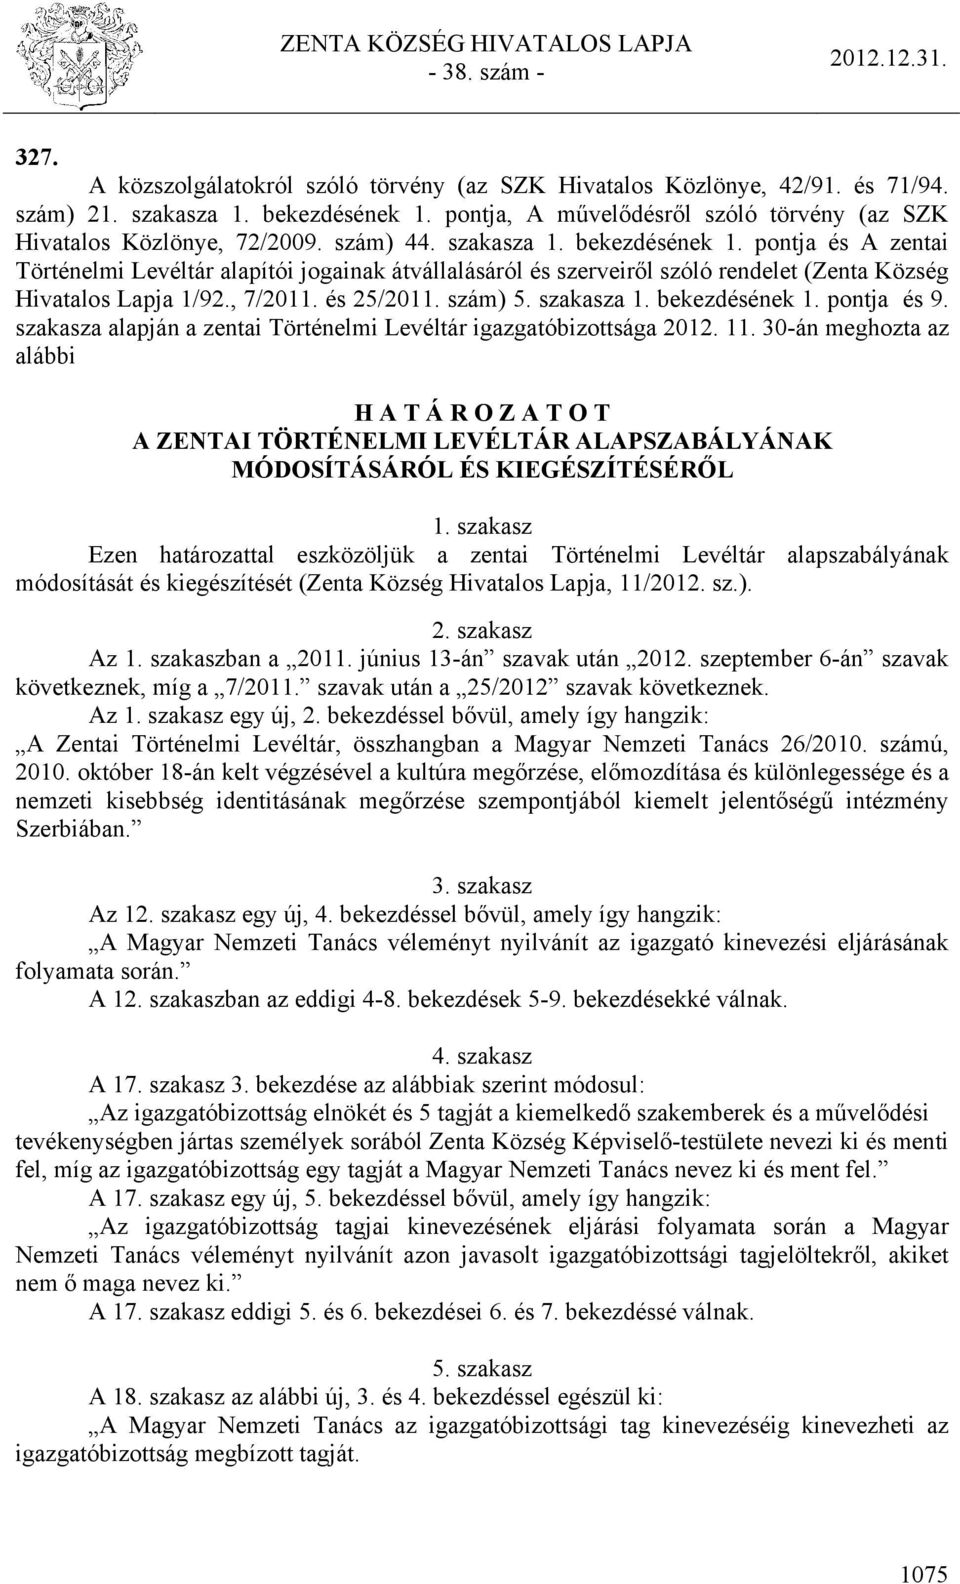 szám) 5. szakasza 1. bekezdésének 1. pontja és 9. szakasza alapján a zentai Történelmi Levéltár igazgatóbizottsága 2012. 11.